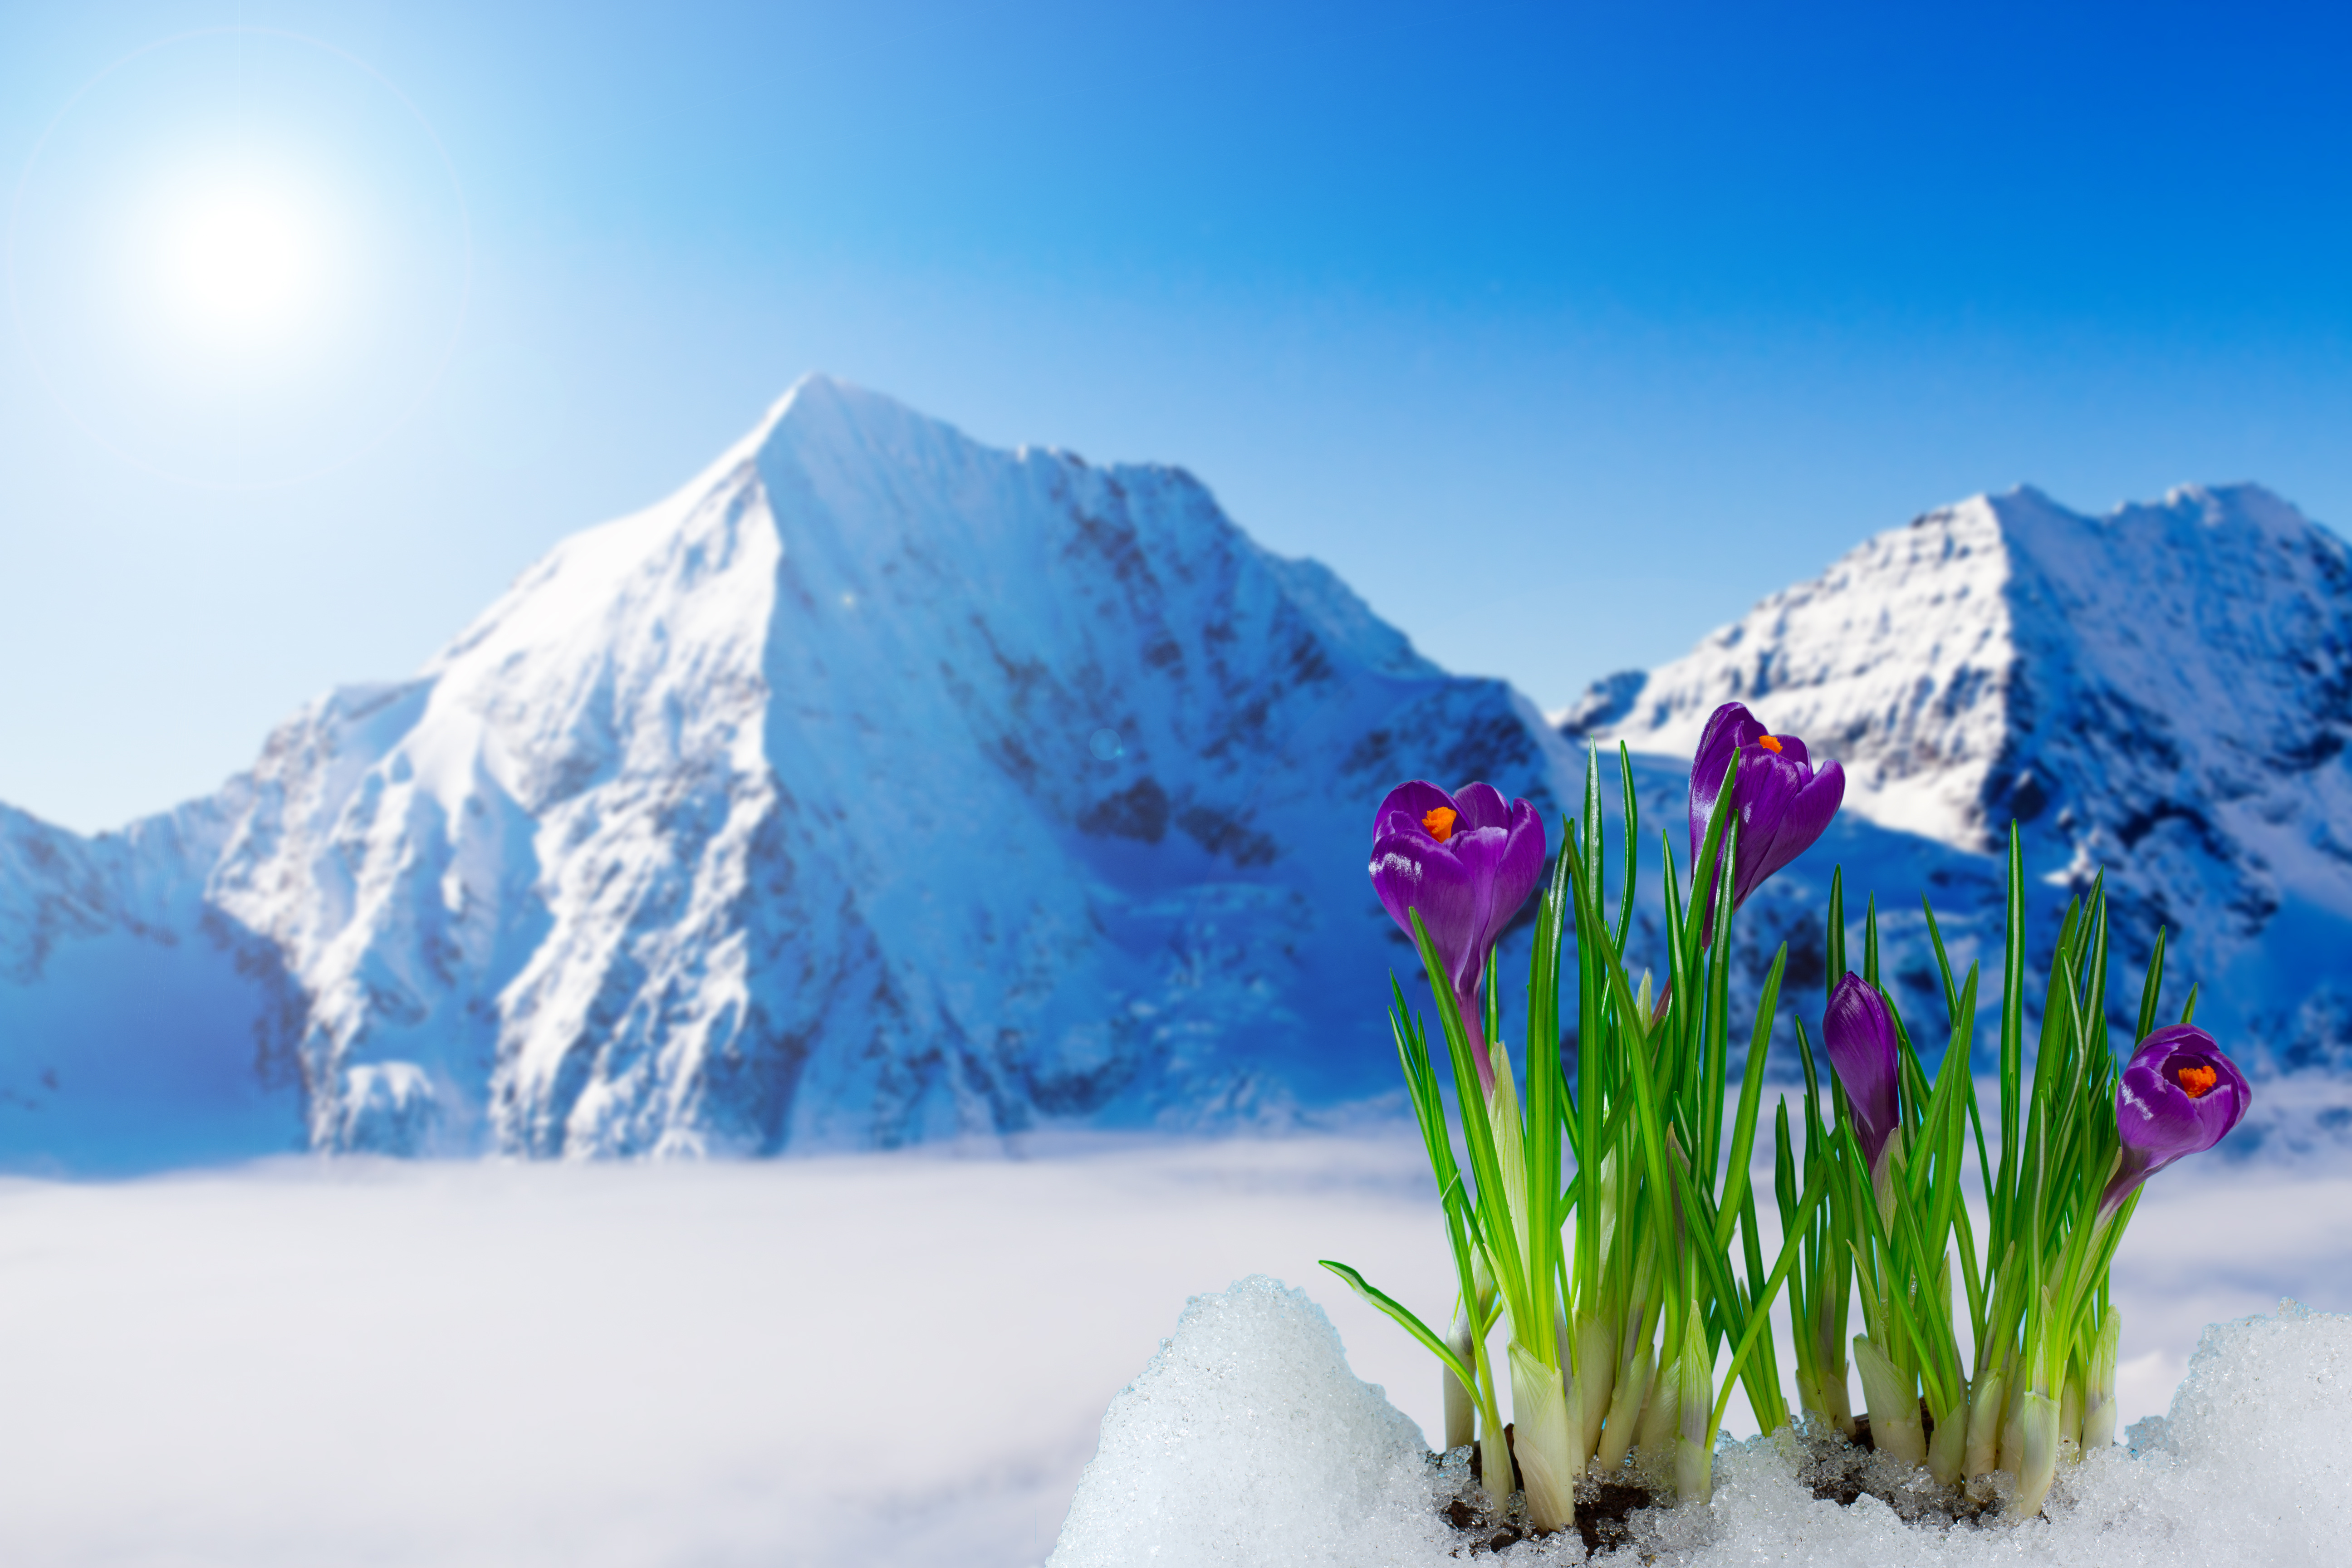 Заставка март природа. Крокус горный цветок Эльбрус. Цветы в снегу. Весенние цветы в горах.